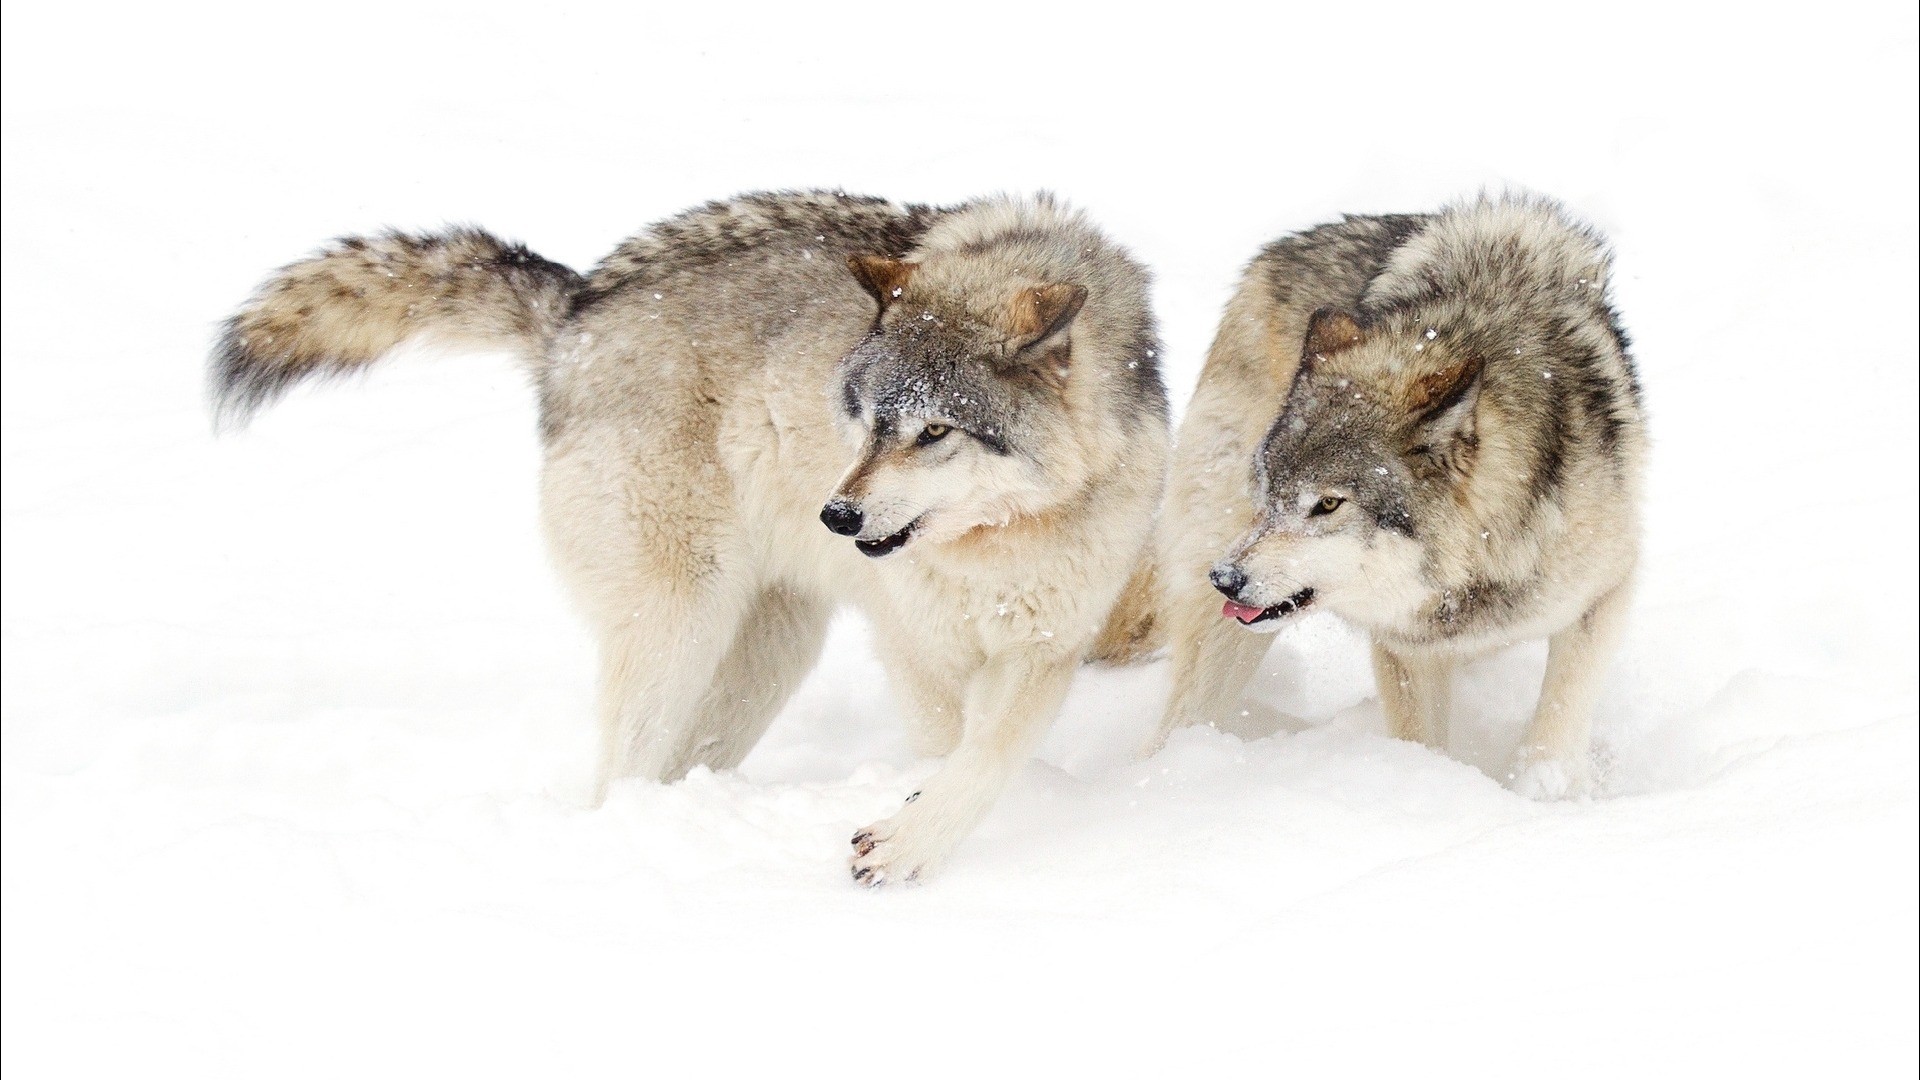 General 1920x1080 snow animals wildlife white wolf mammals winter cold ice